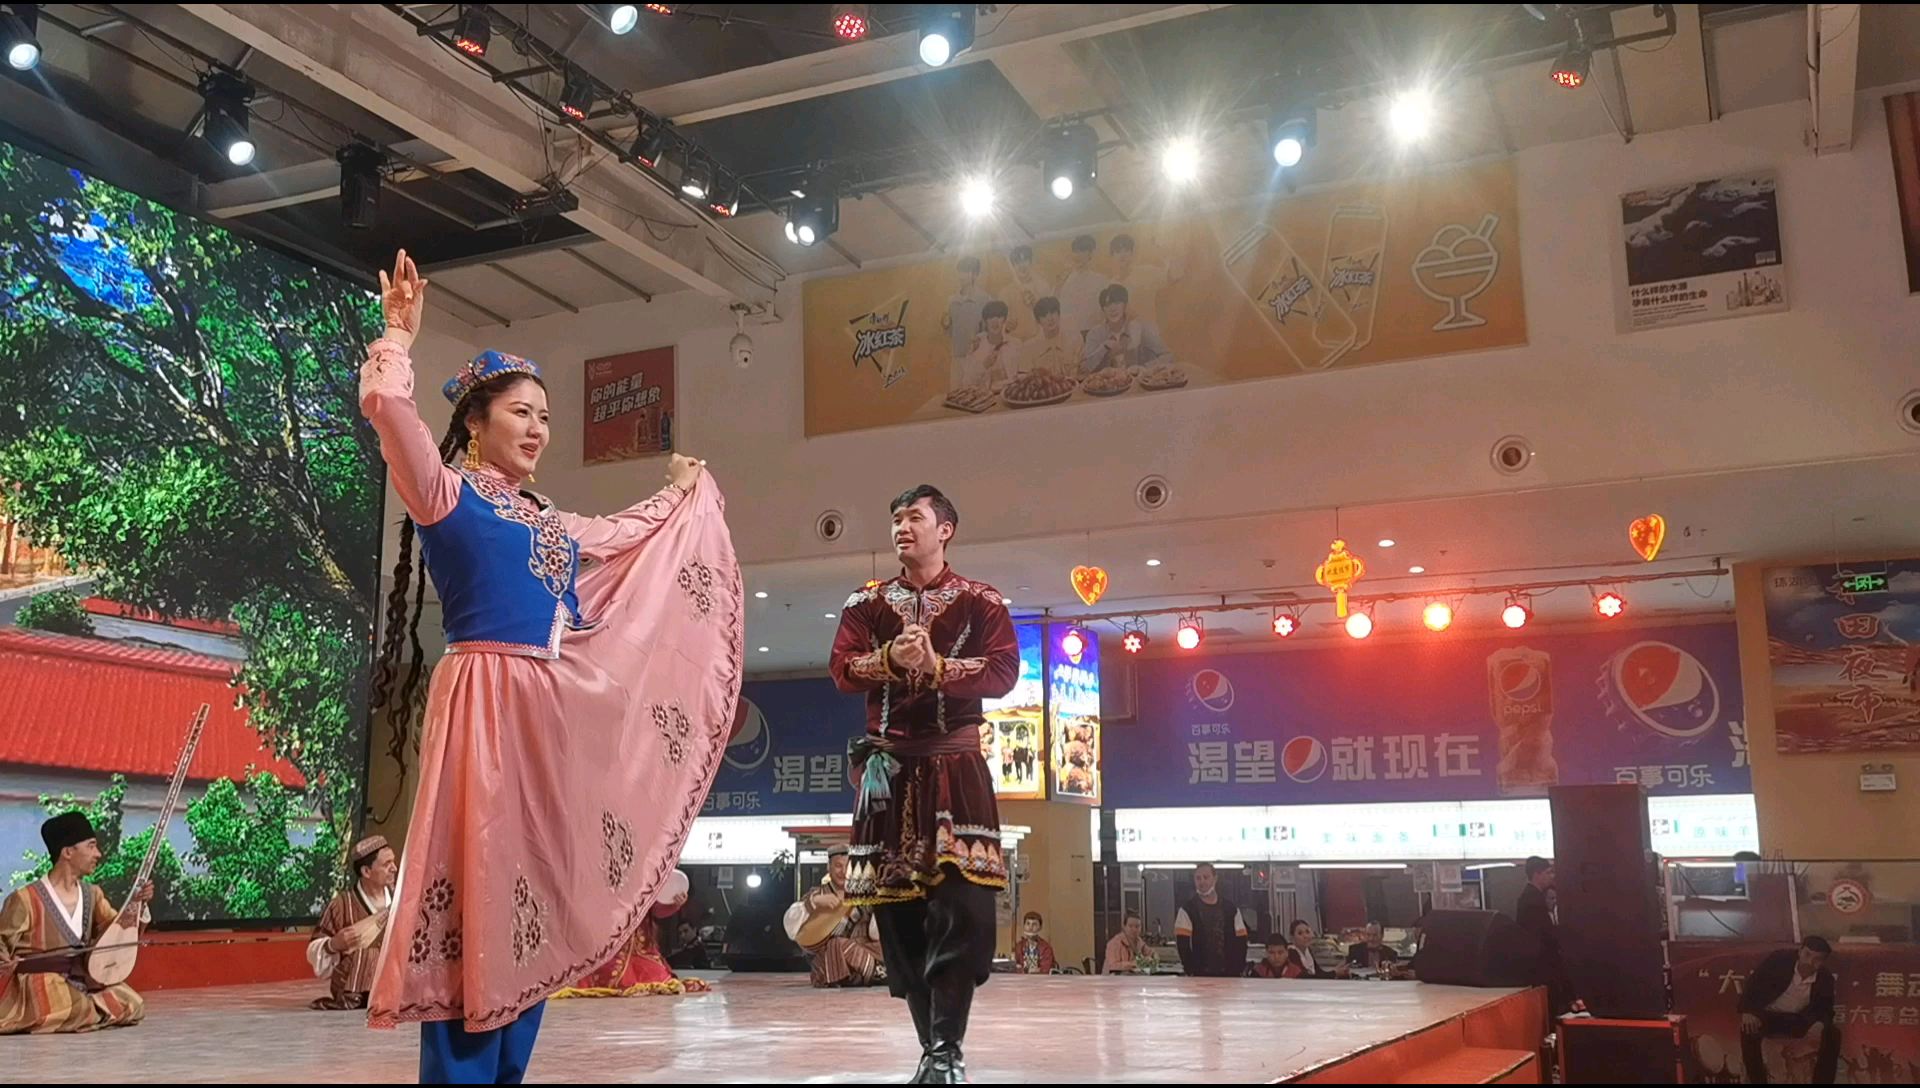 这个双人舞蹈的音乐节奏仍然是麦西来甫！麦西来甫是新疆民族音乐的下里巴人！